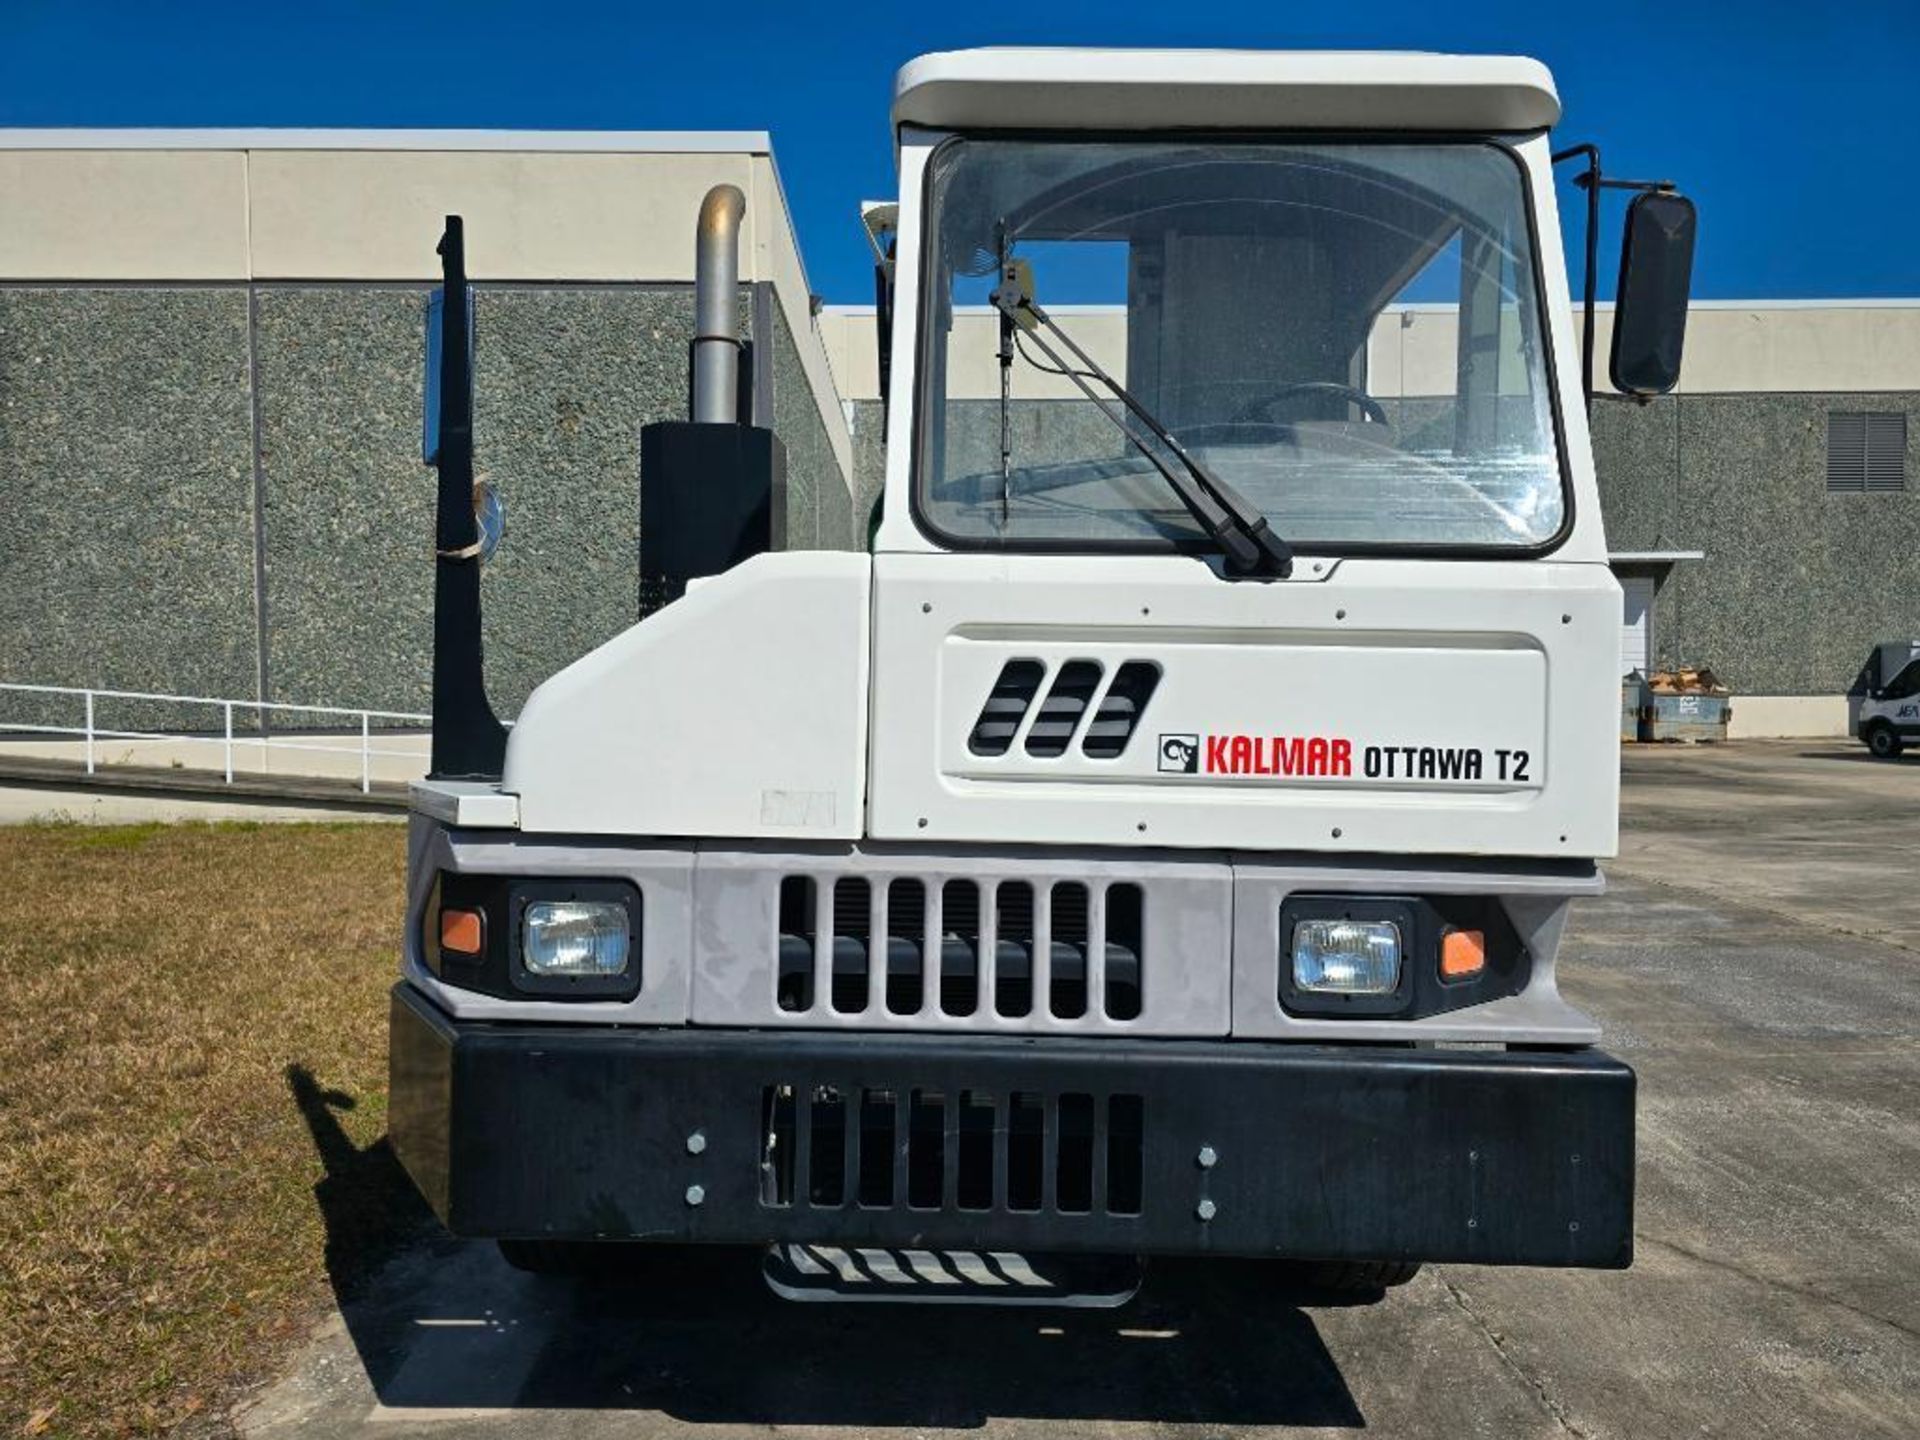 2017 Kalmar Ottawa T2 Spotter Truck, Dual Tires, 5th Wheel, Allison Automatic Transmission, Hydrauli - Bild 3 aus 11